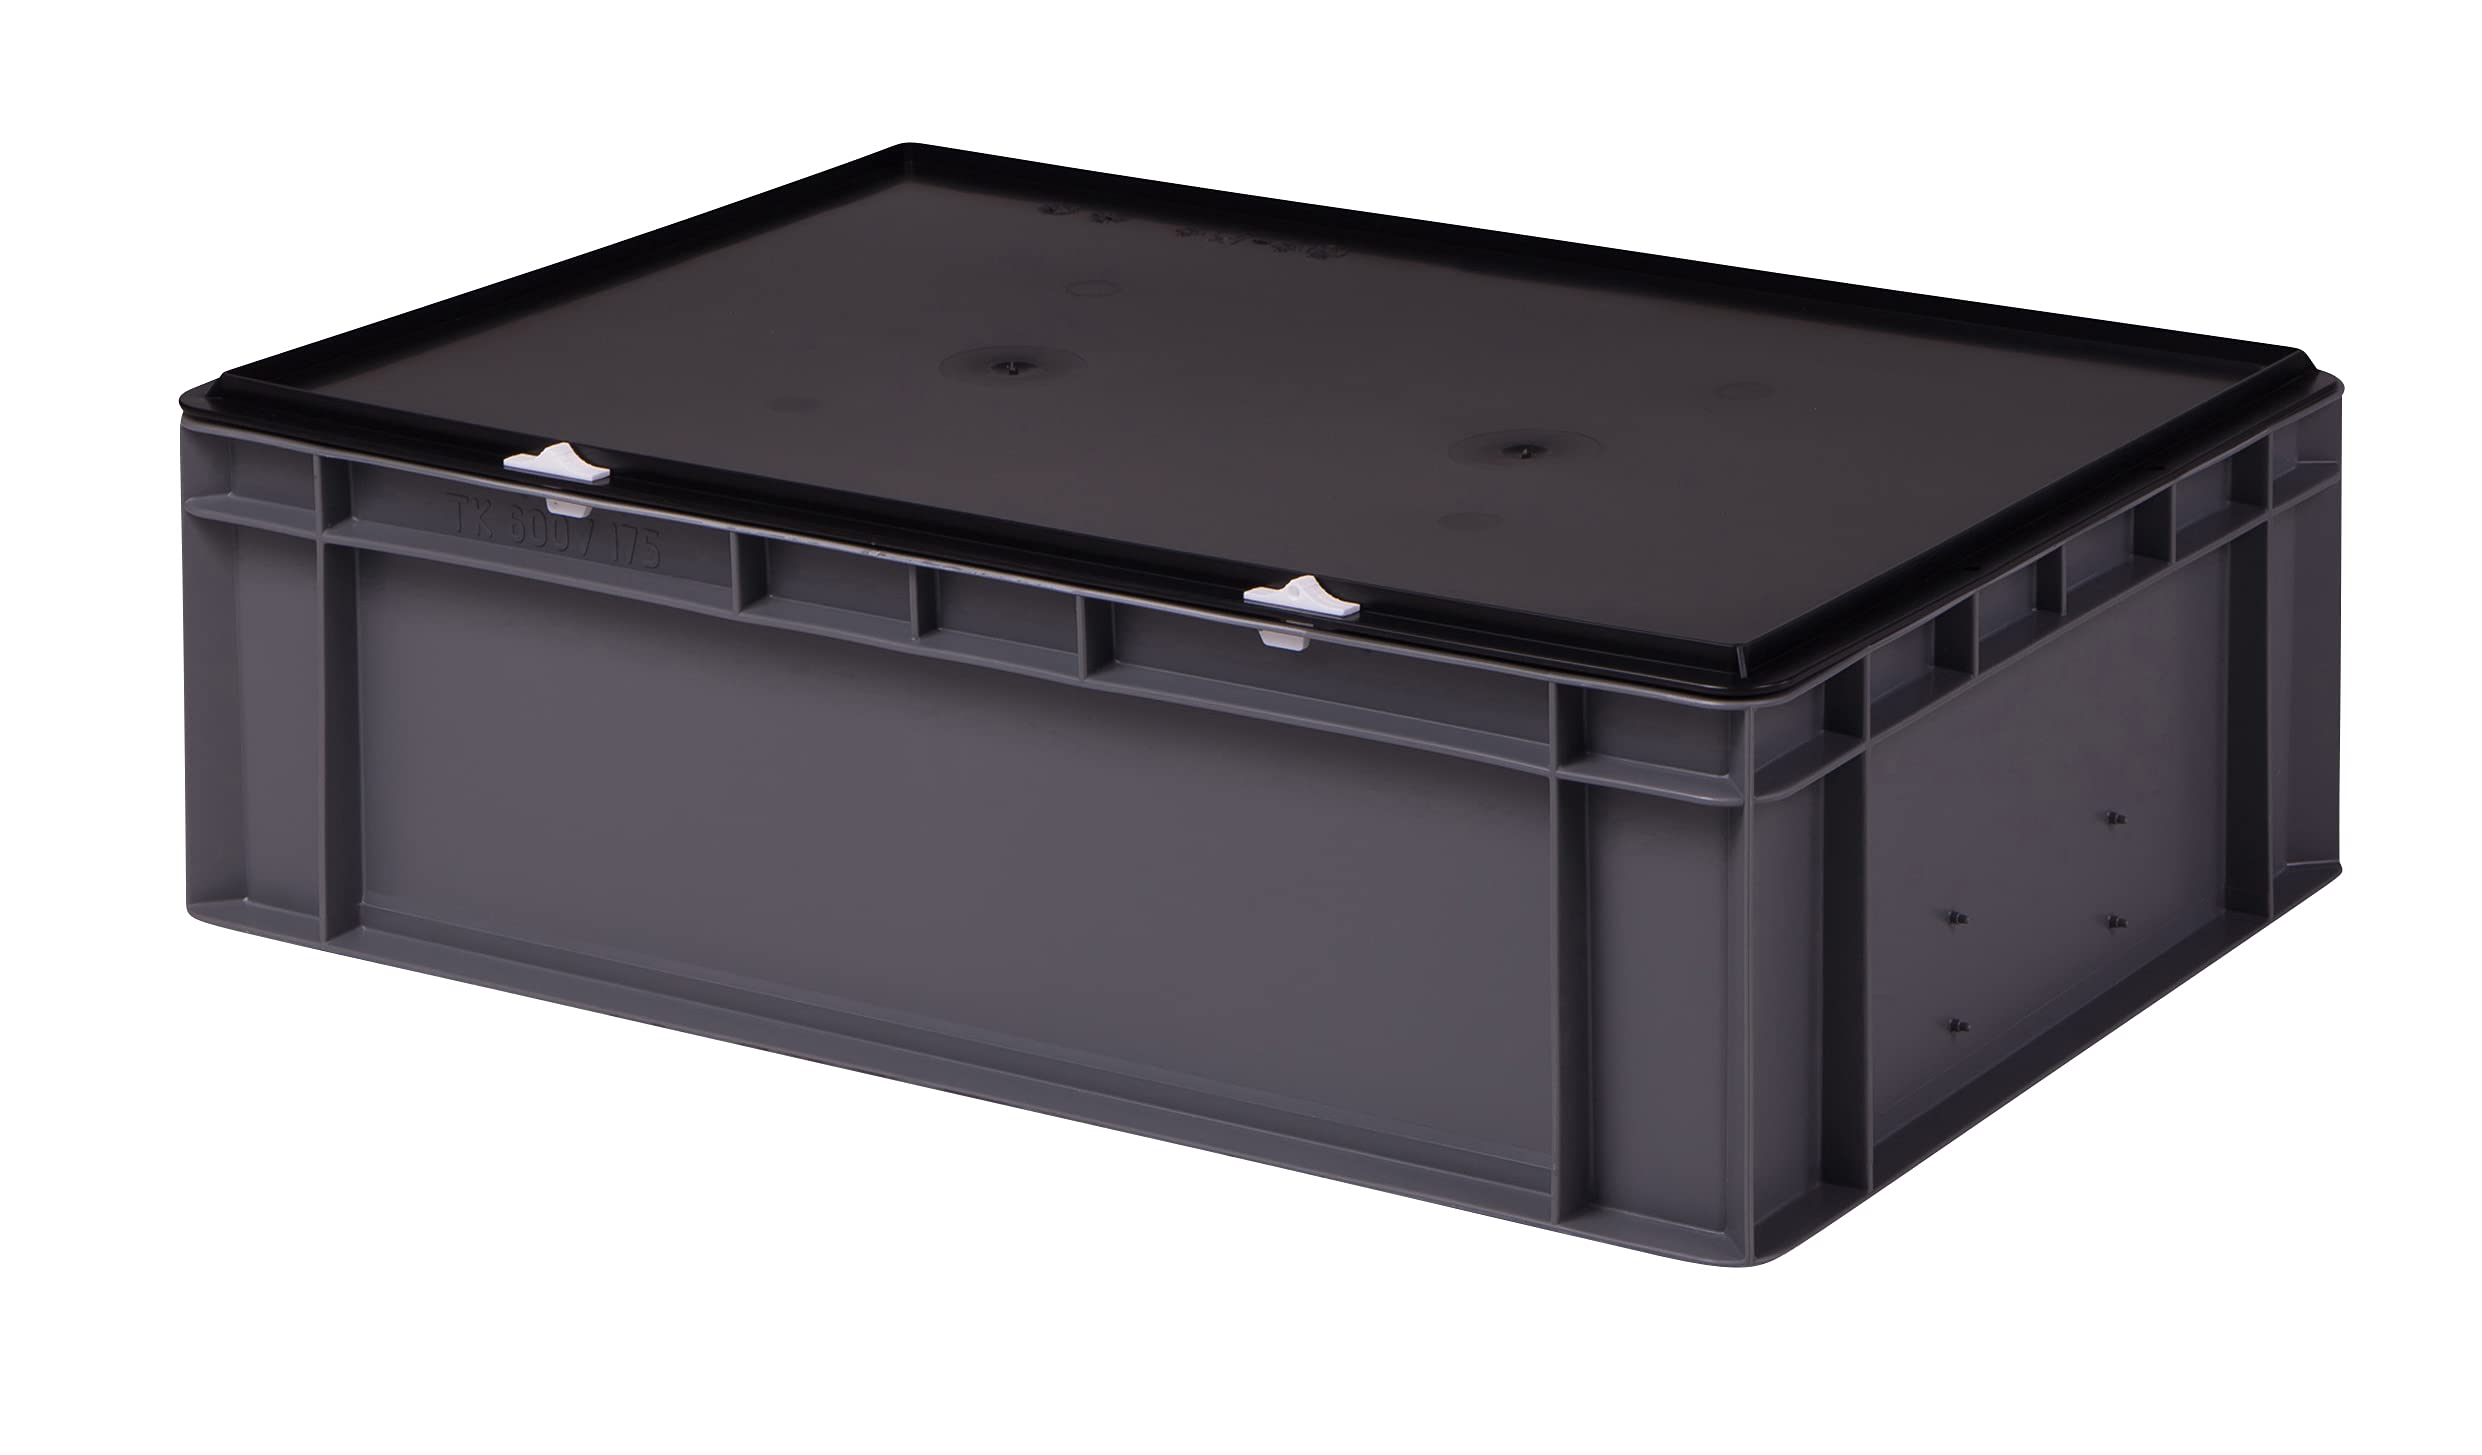 1a-TopStore Stabile Profi Aufbewahrungsbox Stapelbox Eurobox Stapelkiste mit Deckel, Kunststoffkiste lieferbar in 5 Farben und 21 Größen für Industrie, Gewerbe, Haushalt (grau, 60x40x18 cm)